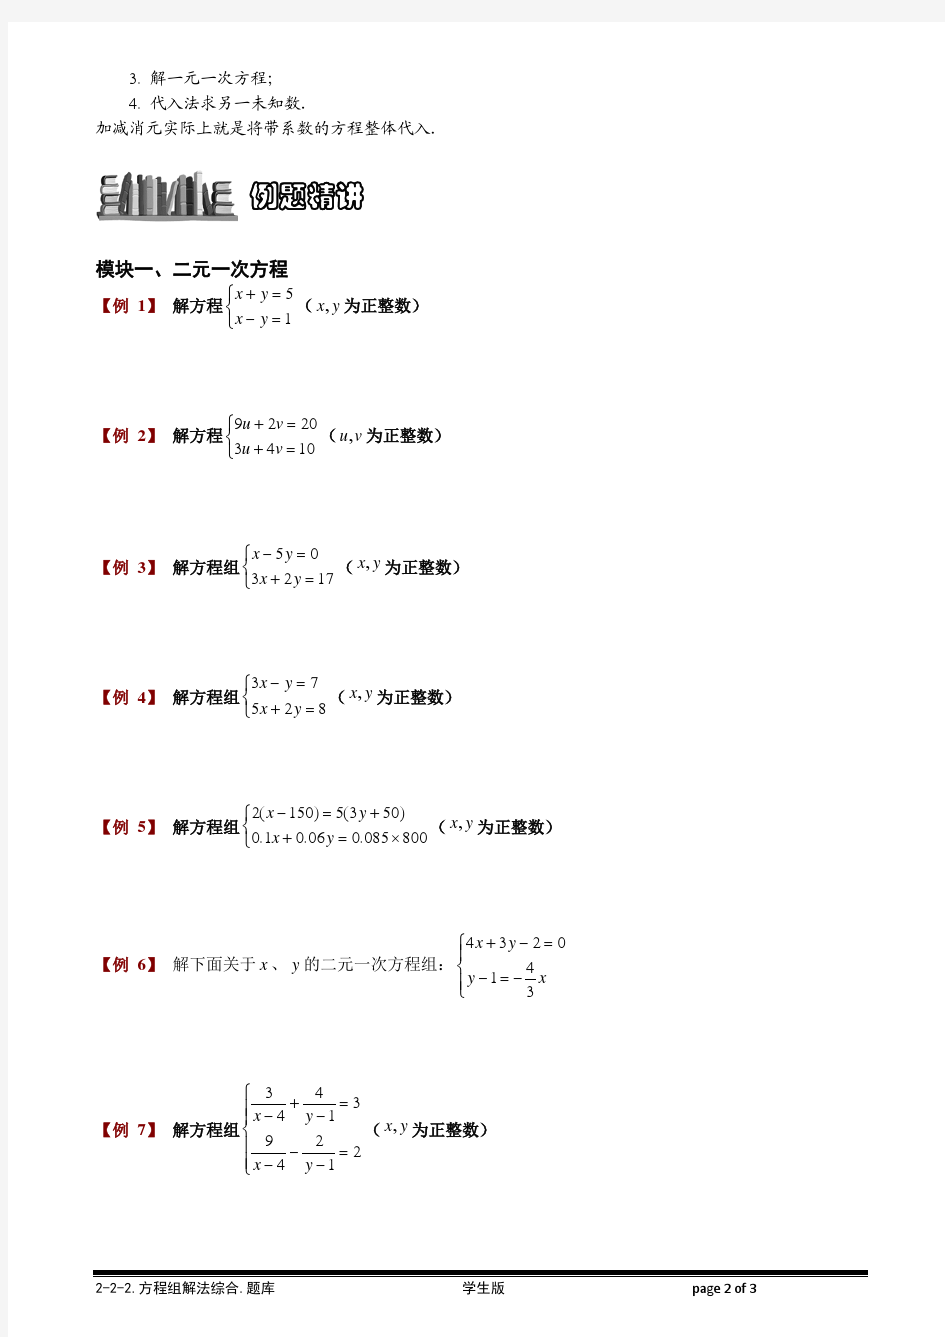 【小学奥数题库系统】2-2-2 方程组解法综合.题库学生版